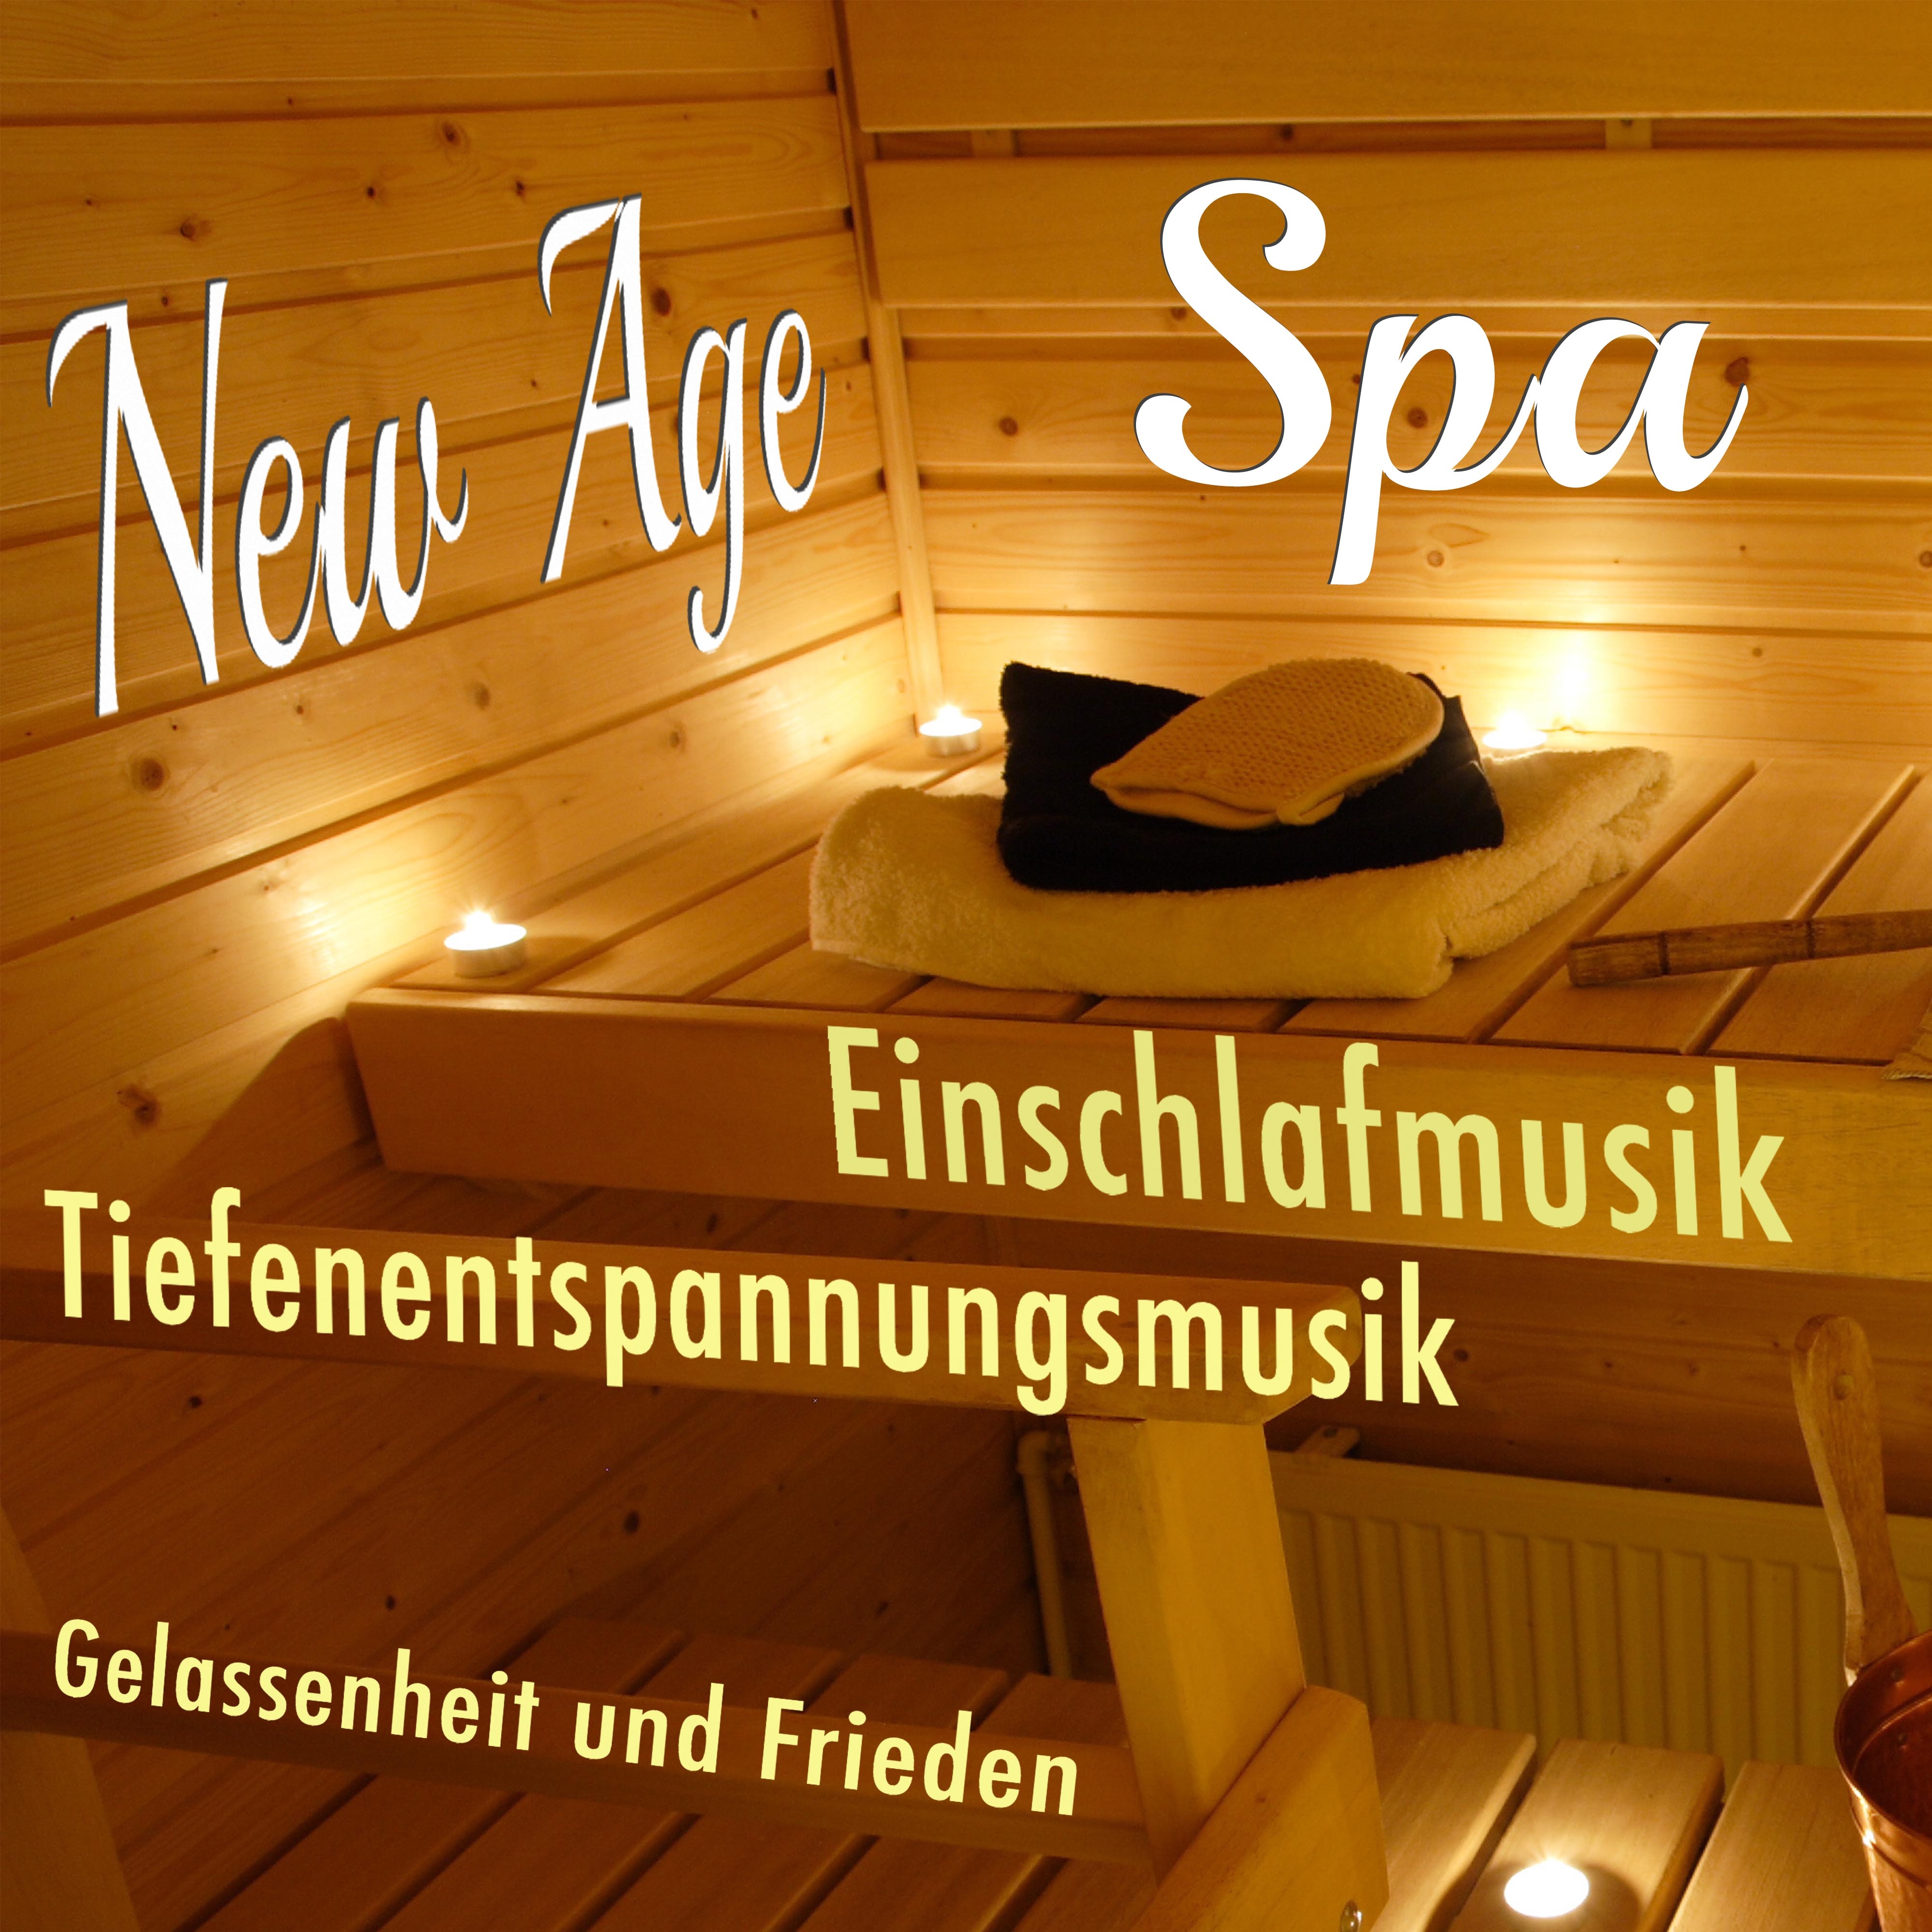 New Age Spa: Einschlafmusik und Tiefenentspannungsmusik fü r Gelassenheit und Frieden